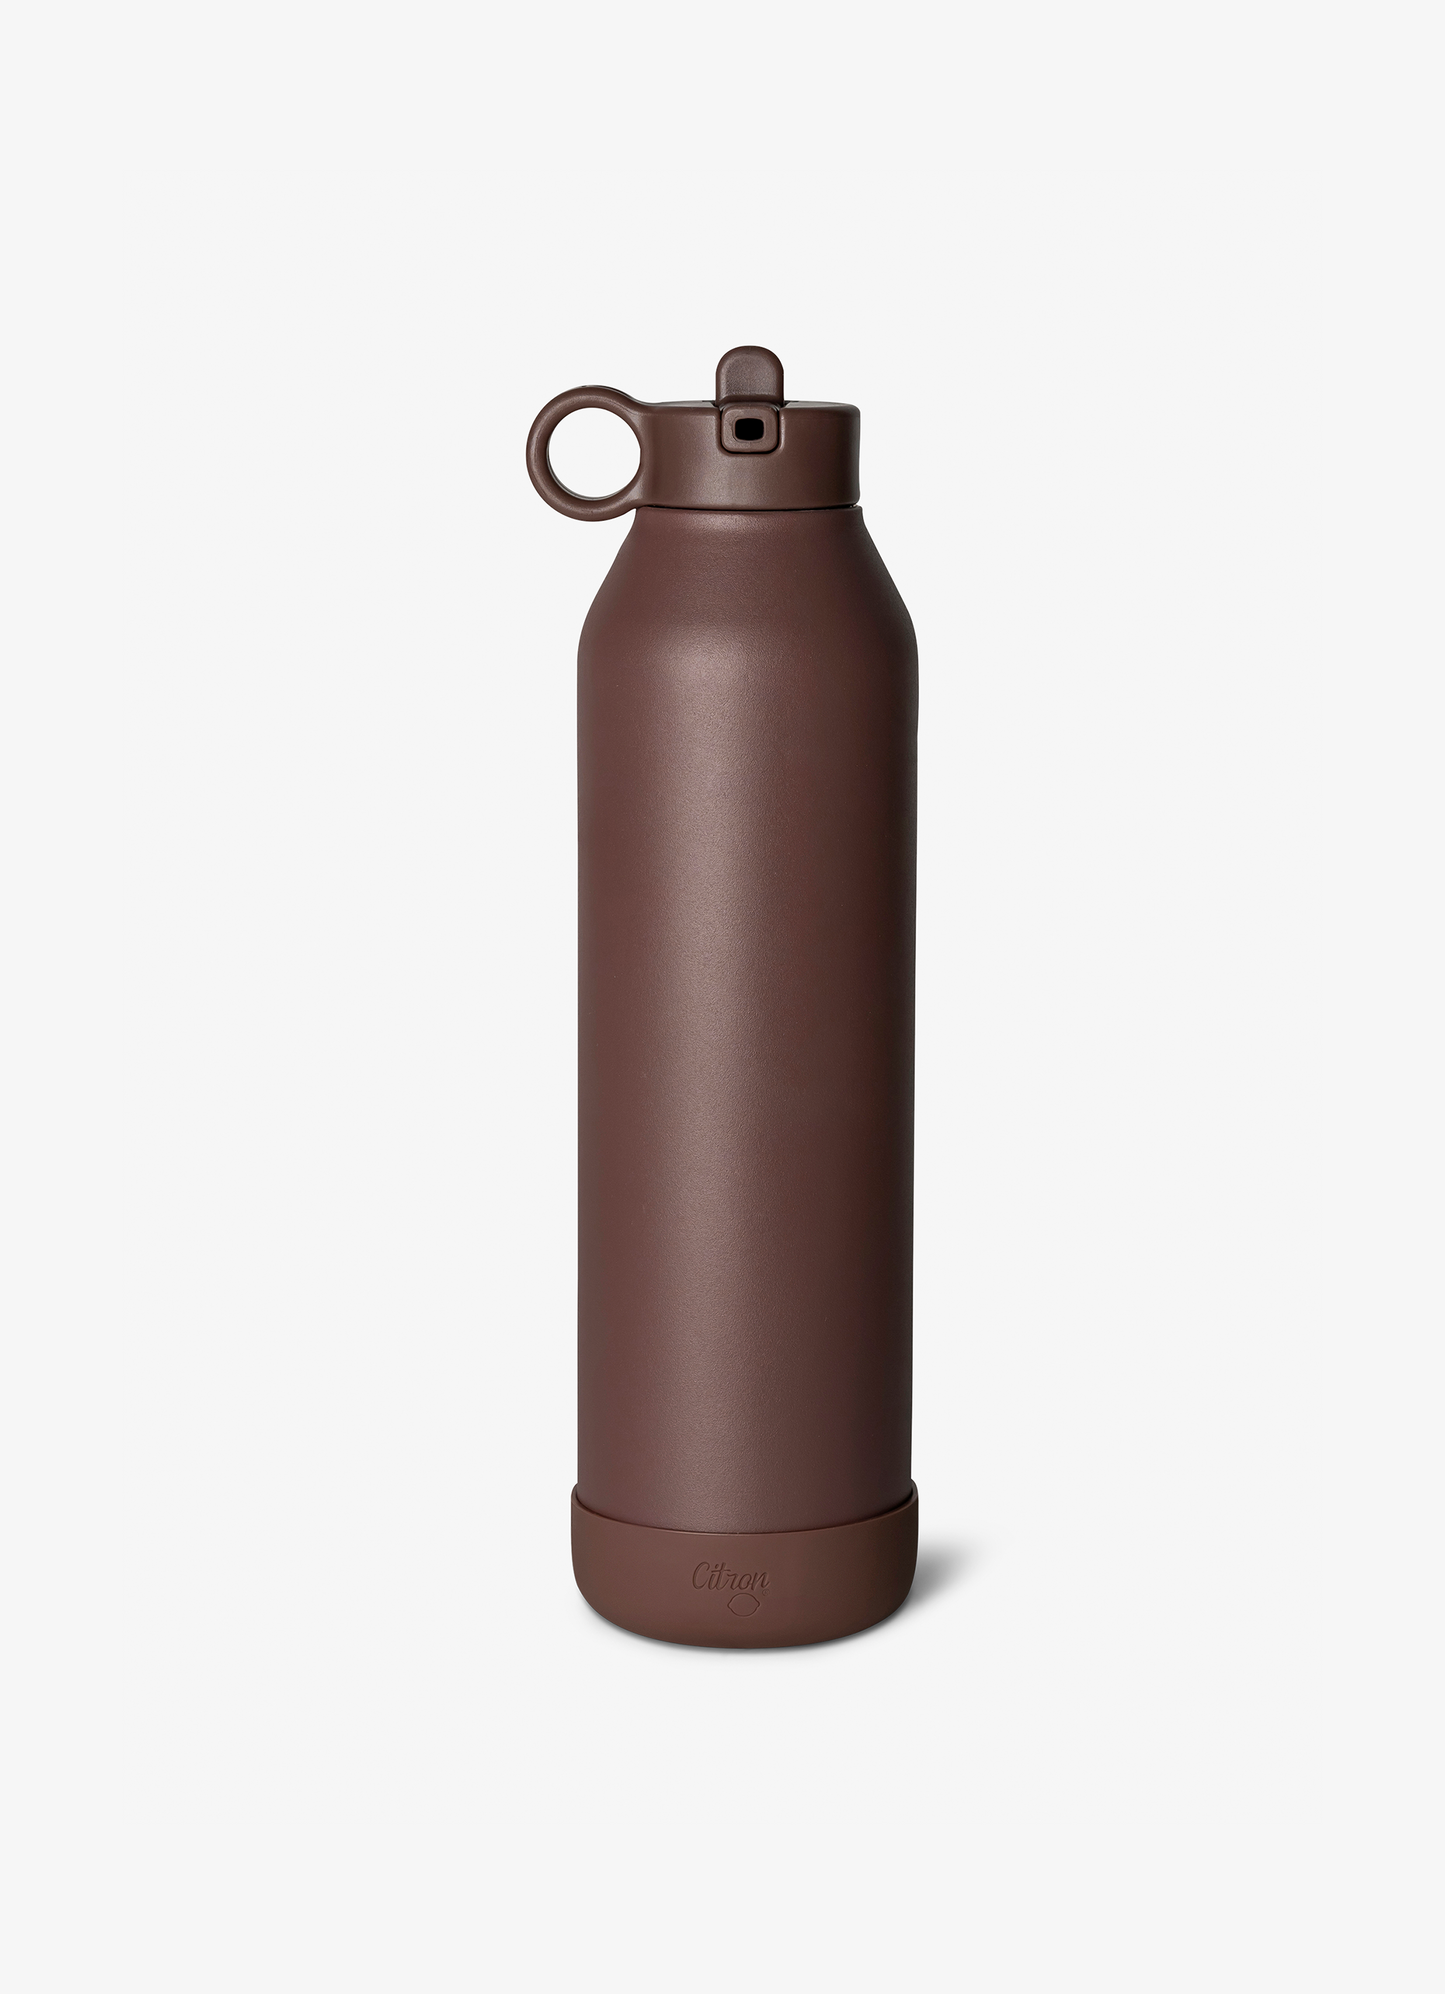 زجاجة ماء كبيرة - 750 مل - لون برقوقي